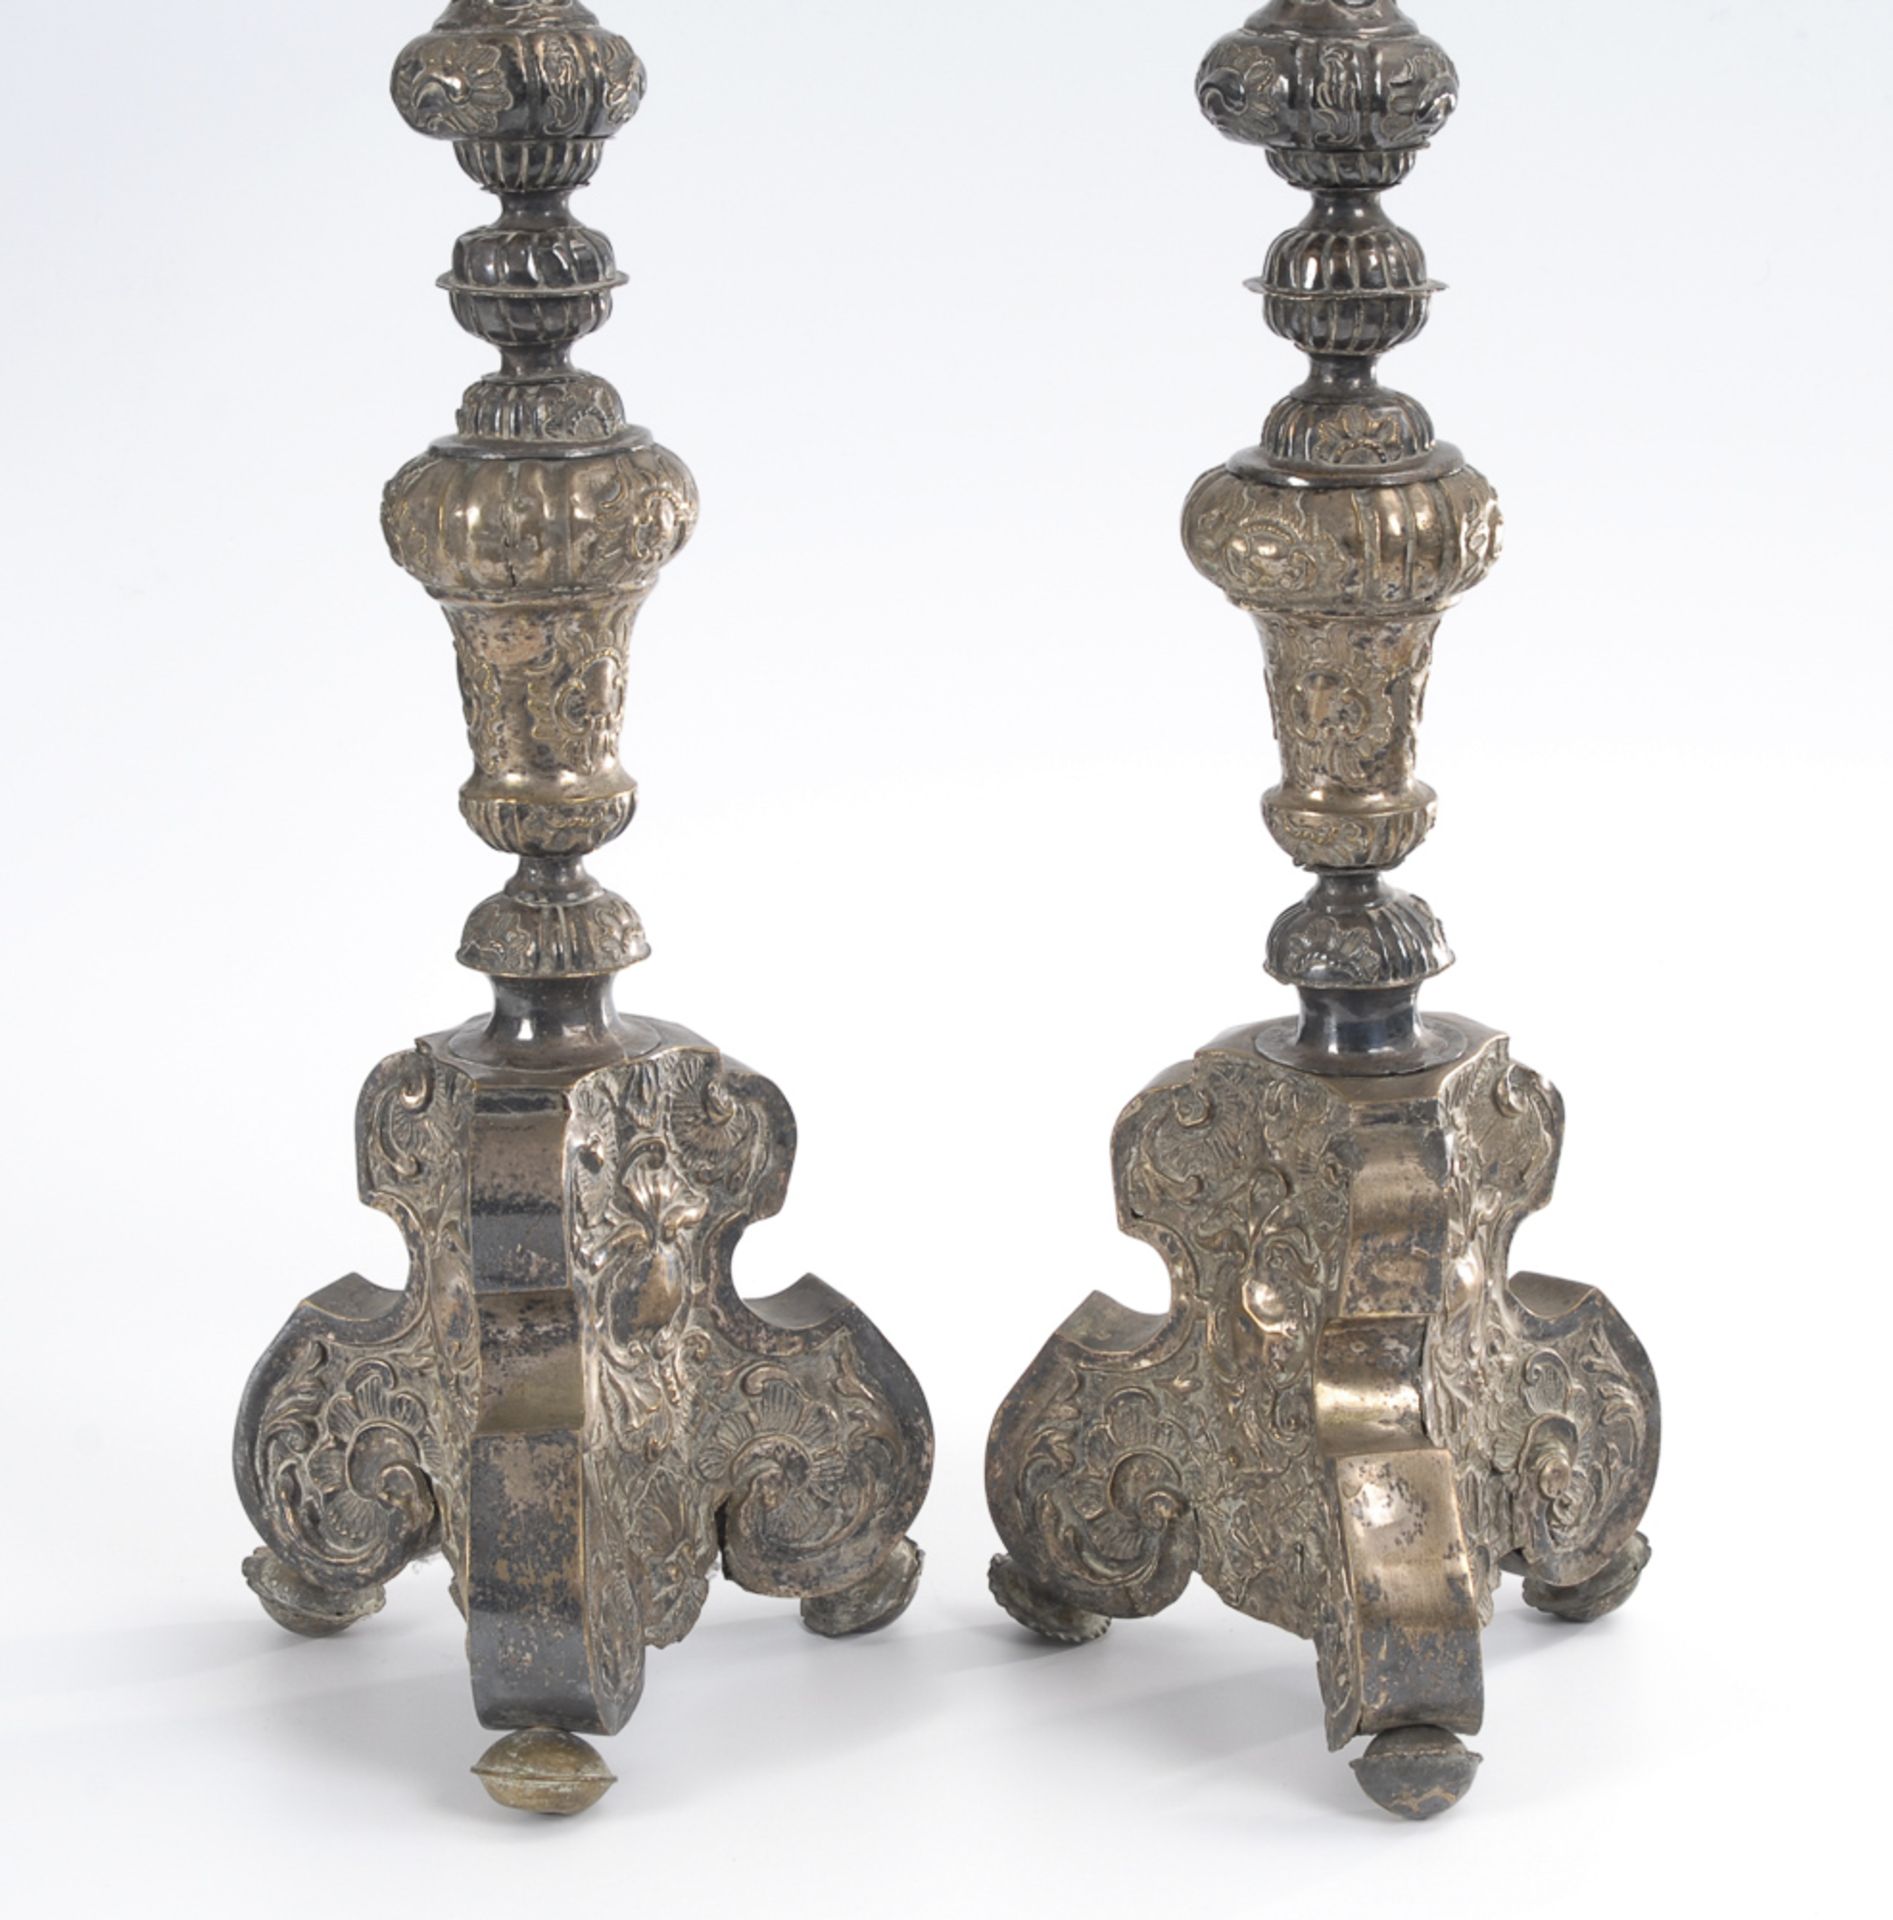 Paar barocke Altarleuchter.18. Jh. Messing, Reste einer Versilberung. H (ohne Dorn) 62 cm. Überaus - Image 2 of 3